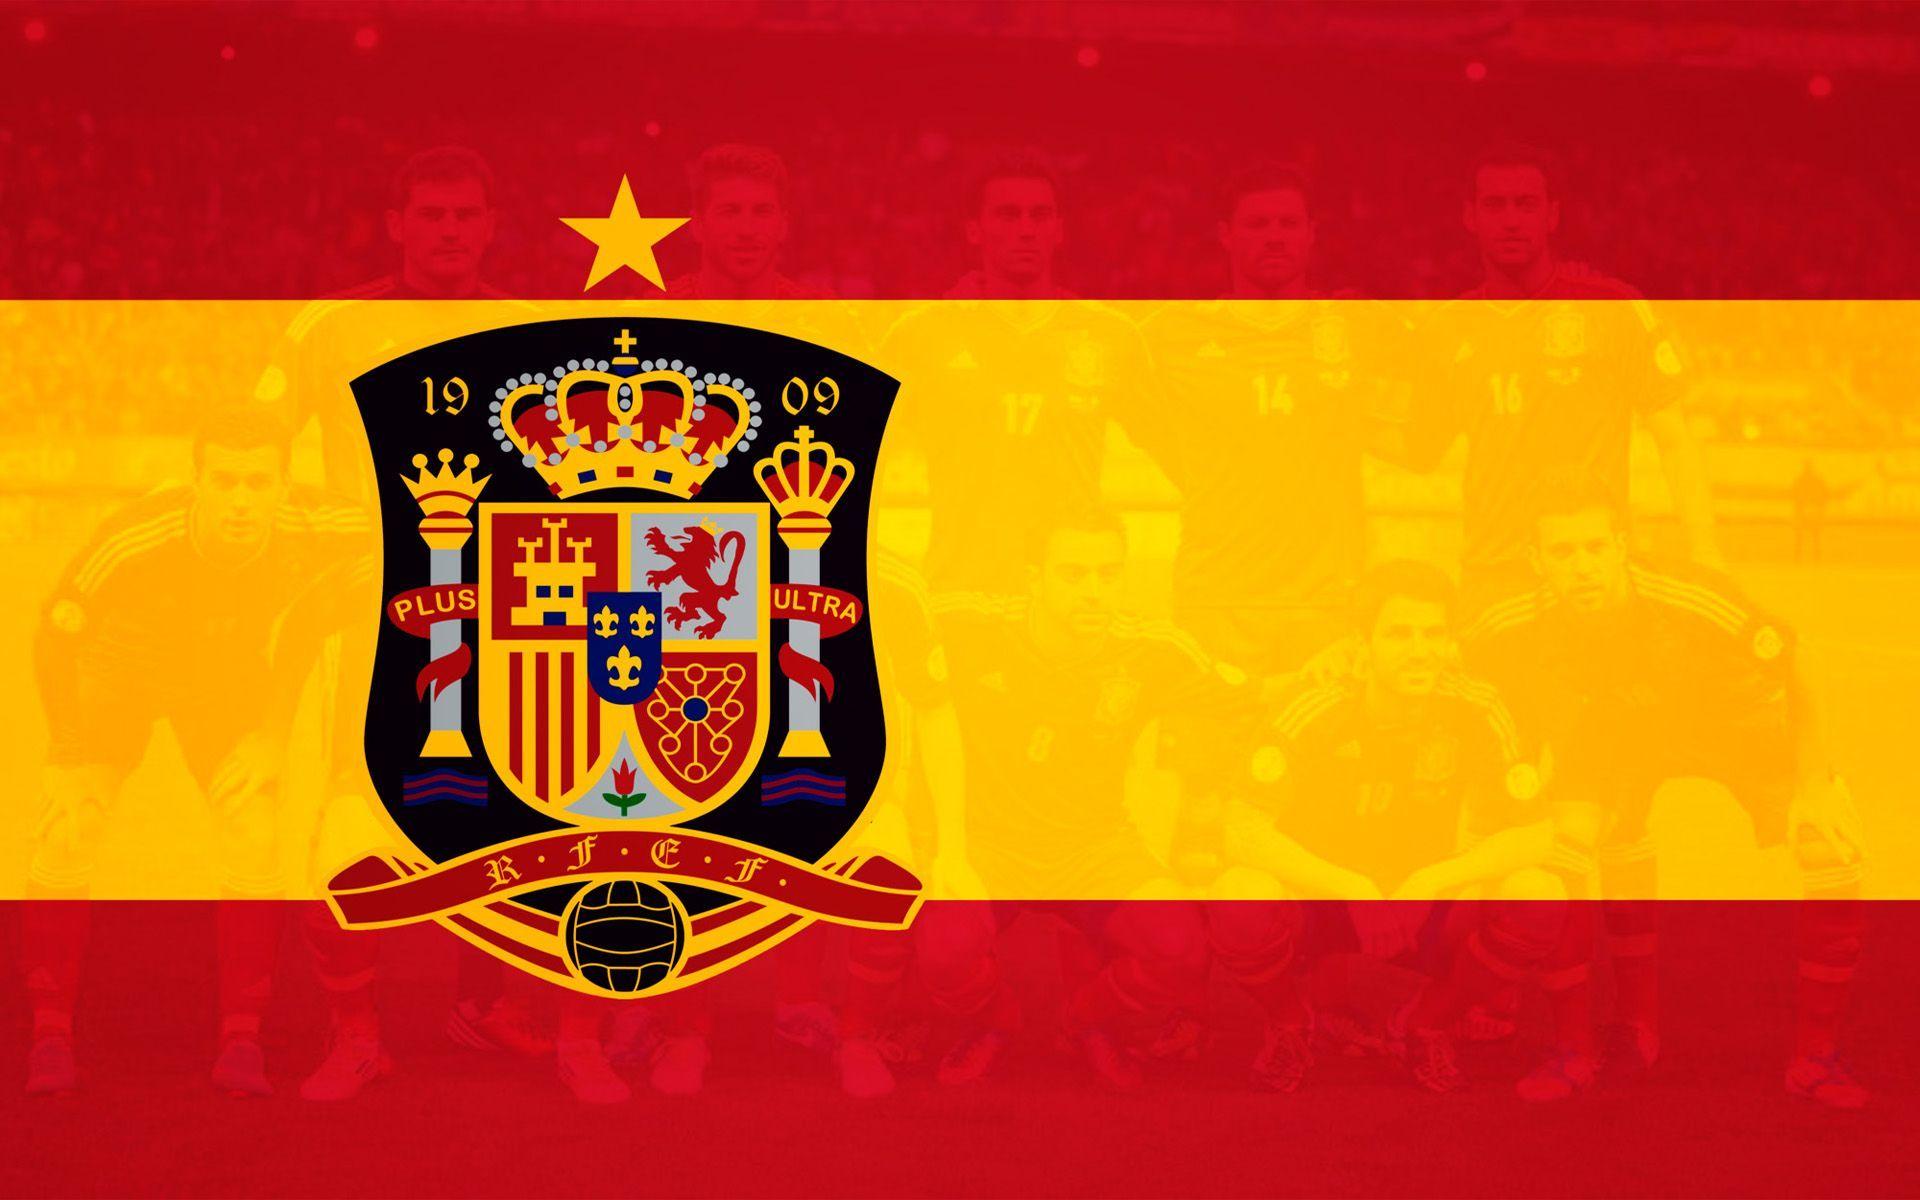 Spain soccer logo wallpaper. Image Wallpaper. Spain